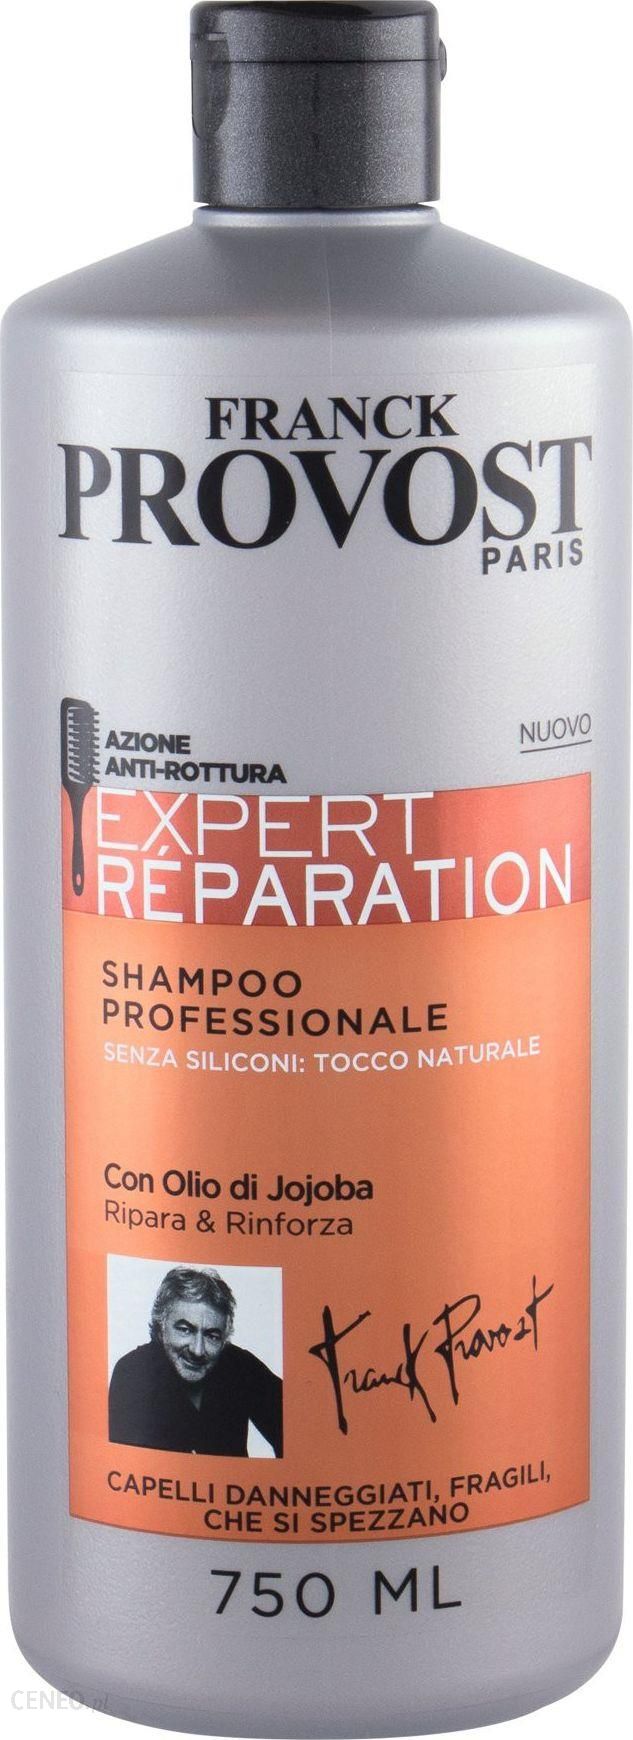 franck provost szampon repair opinie